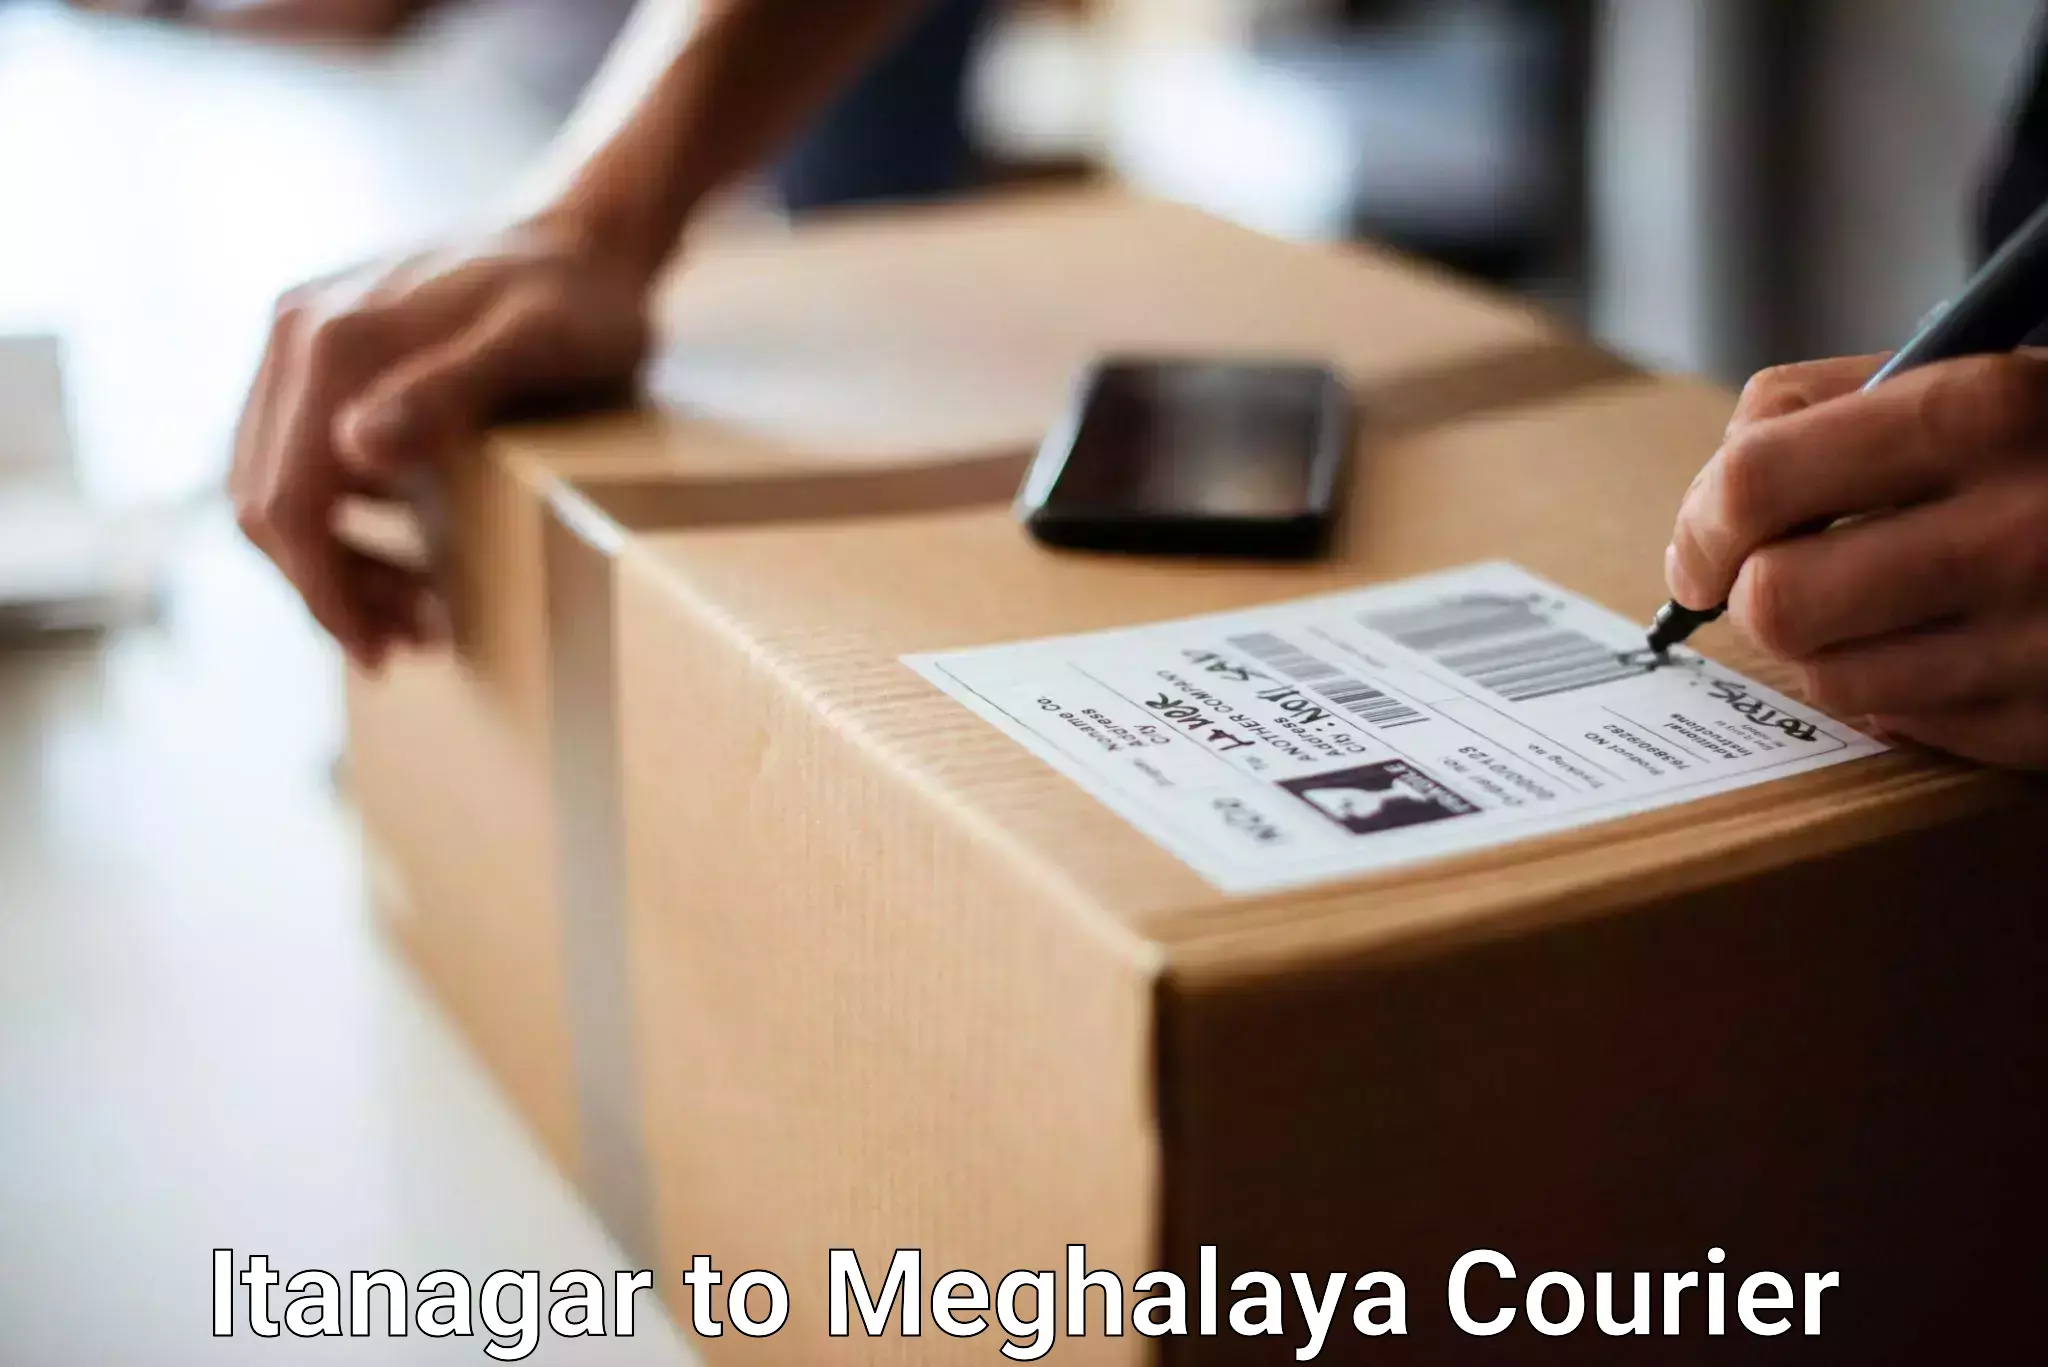 Baggage transport network Itanagar to NIT Meghalaya